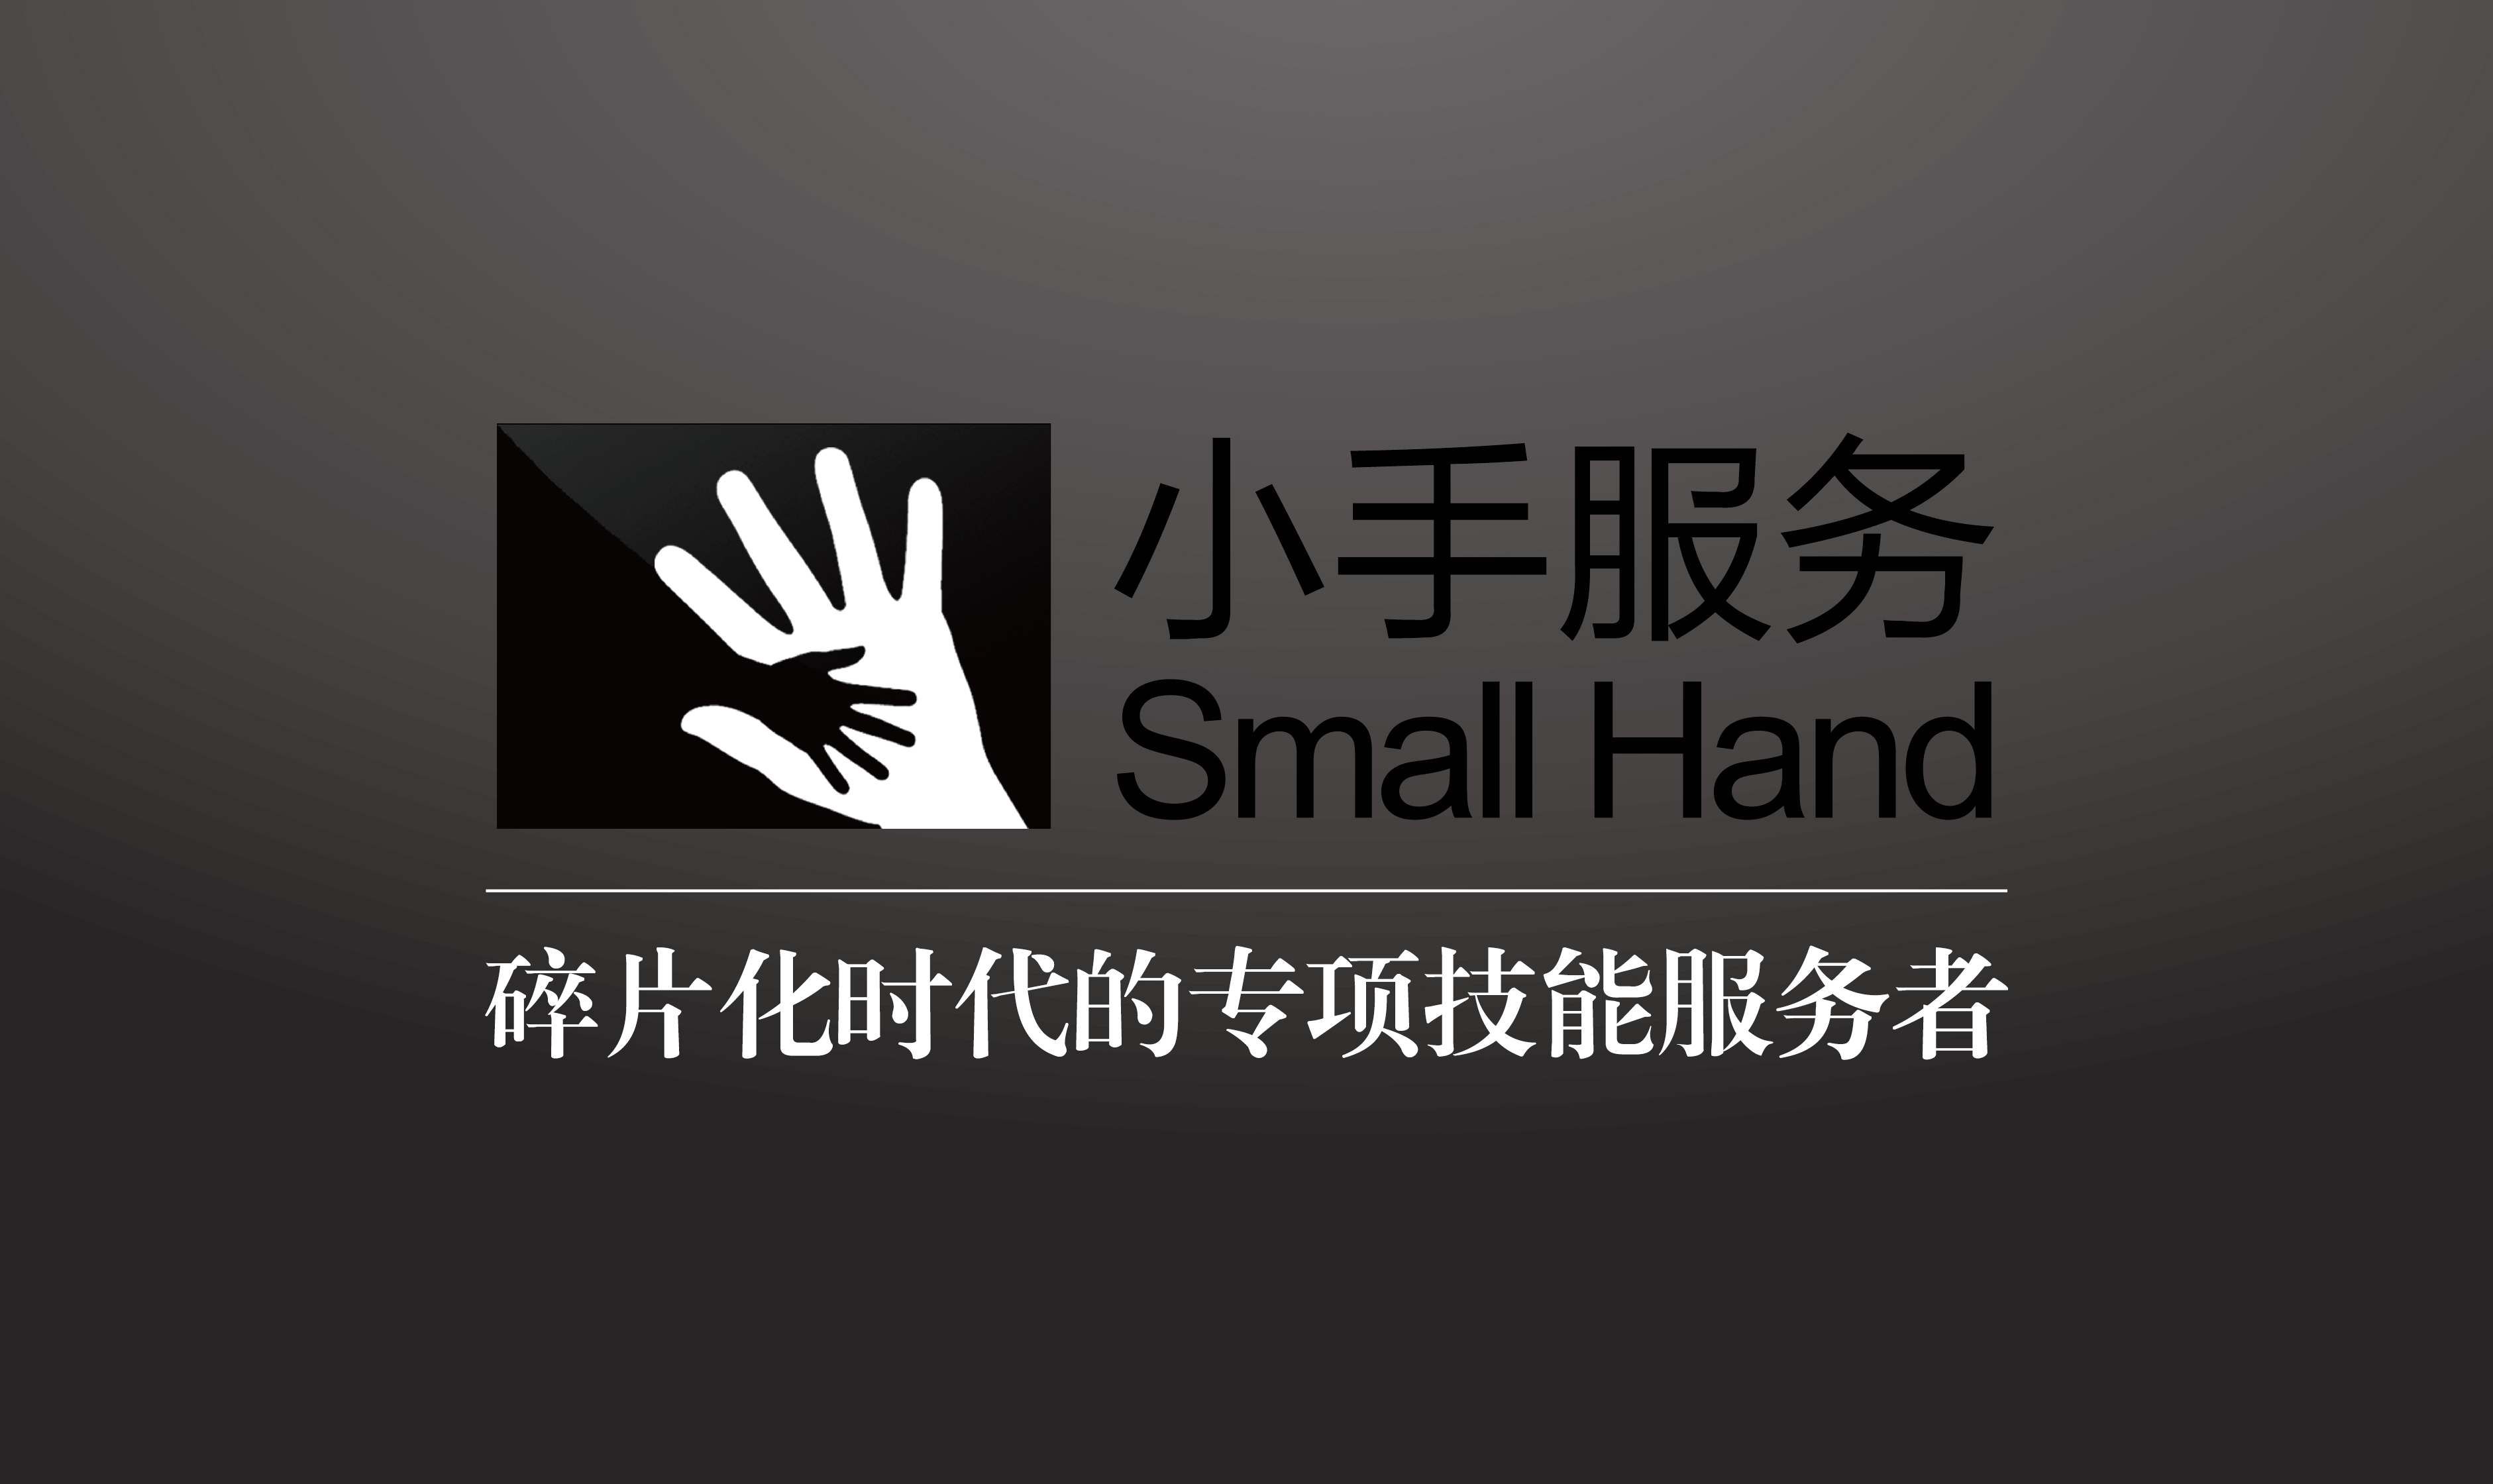 【企业品牌营销服务】|Small hand| (预定)